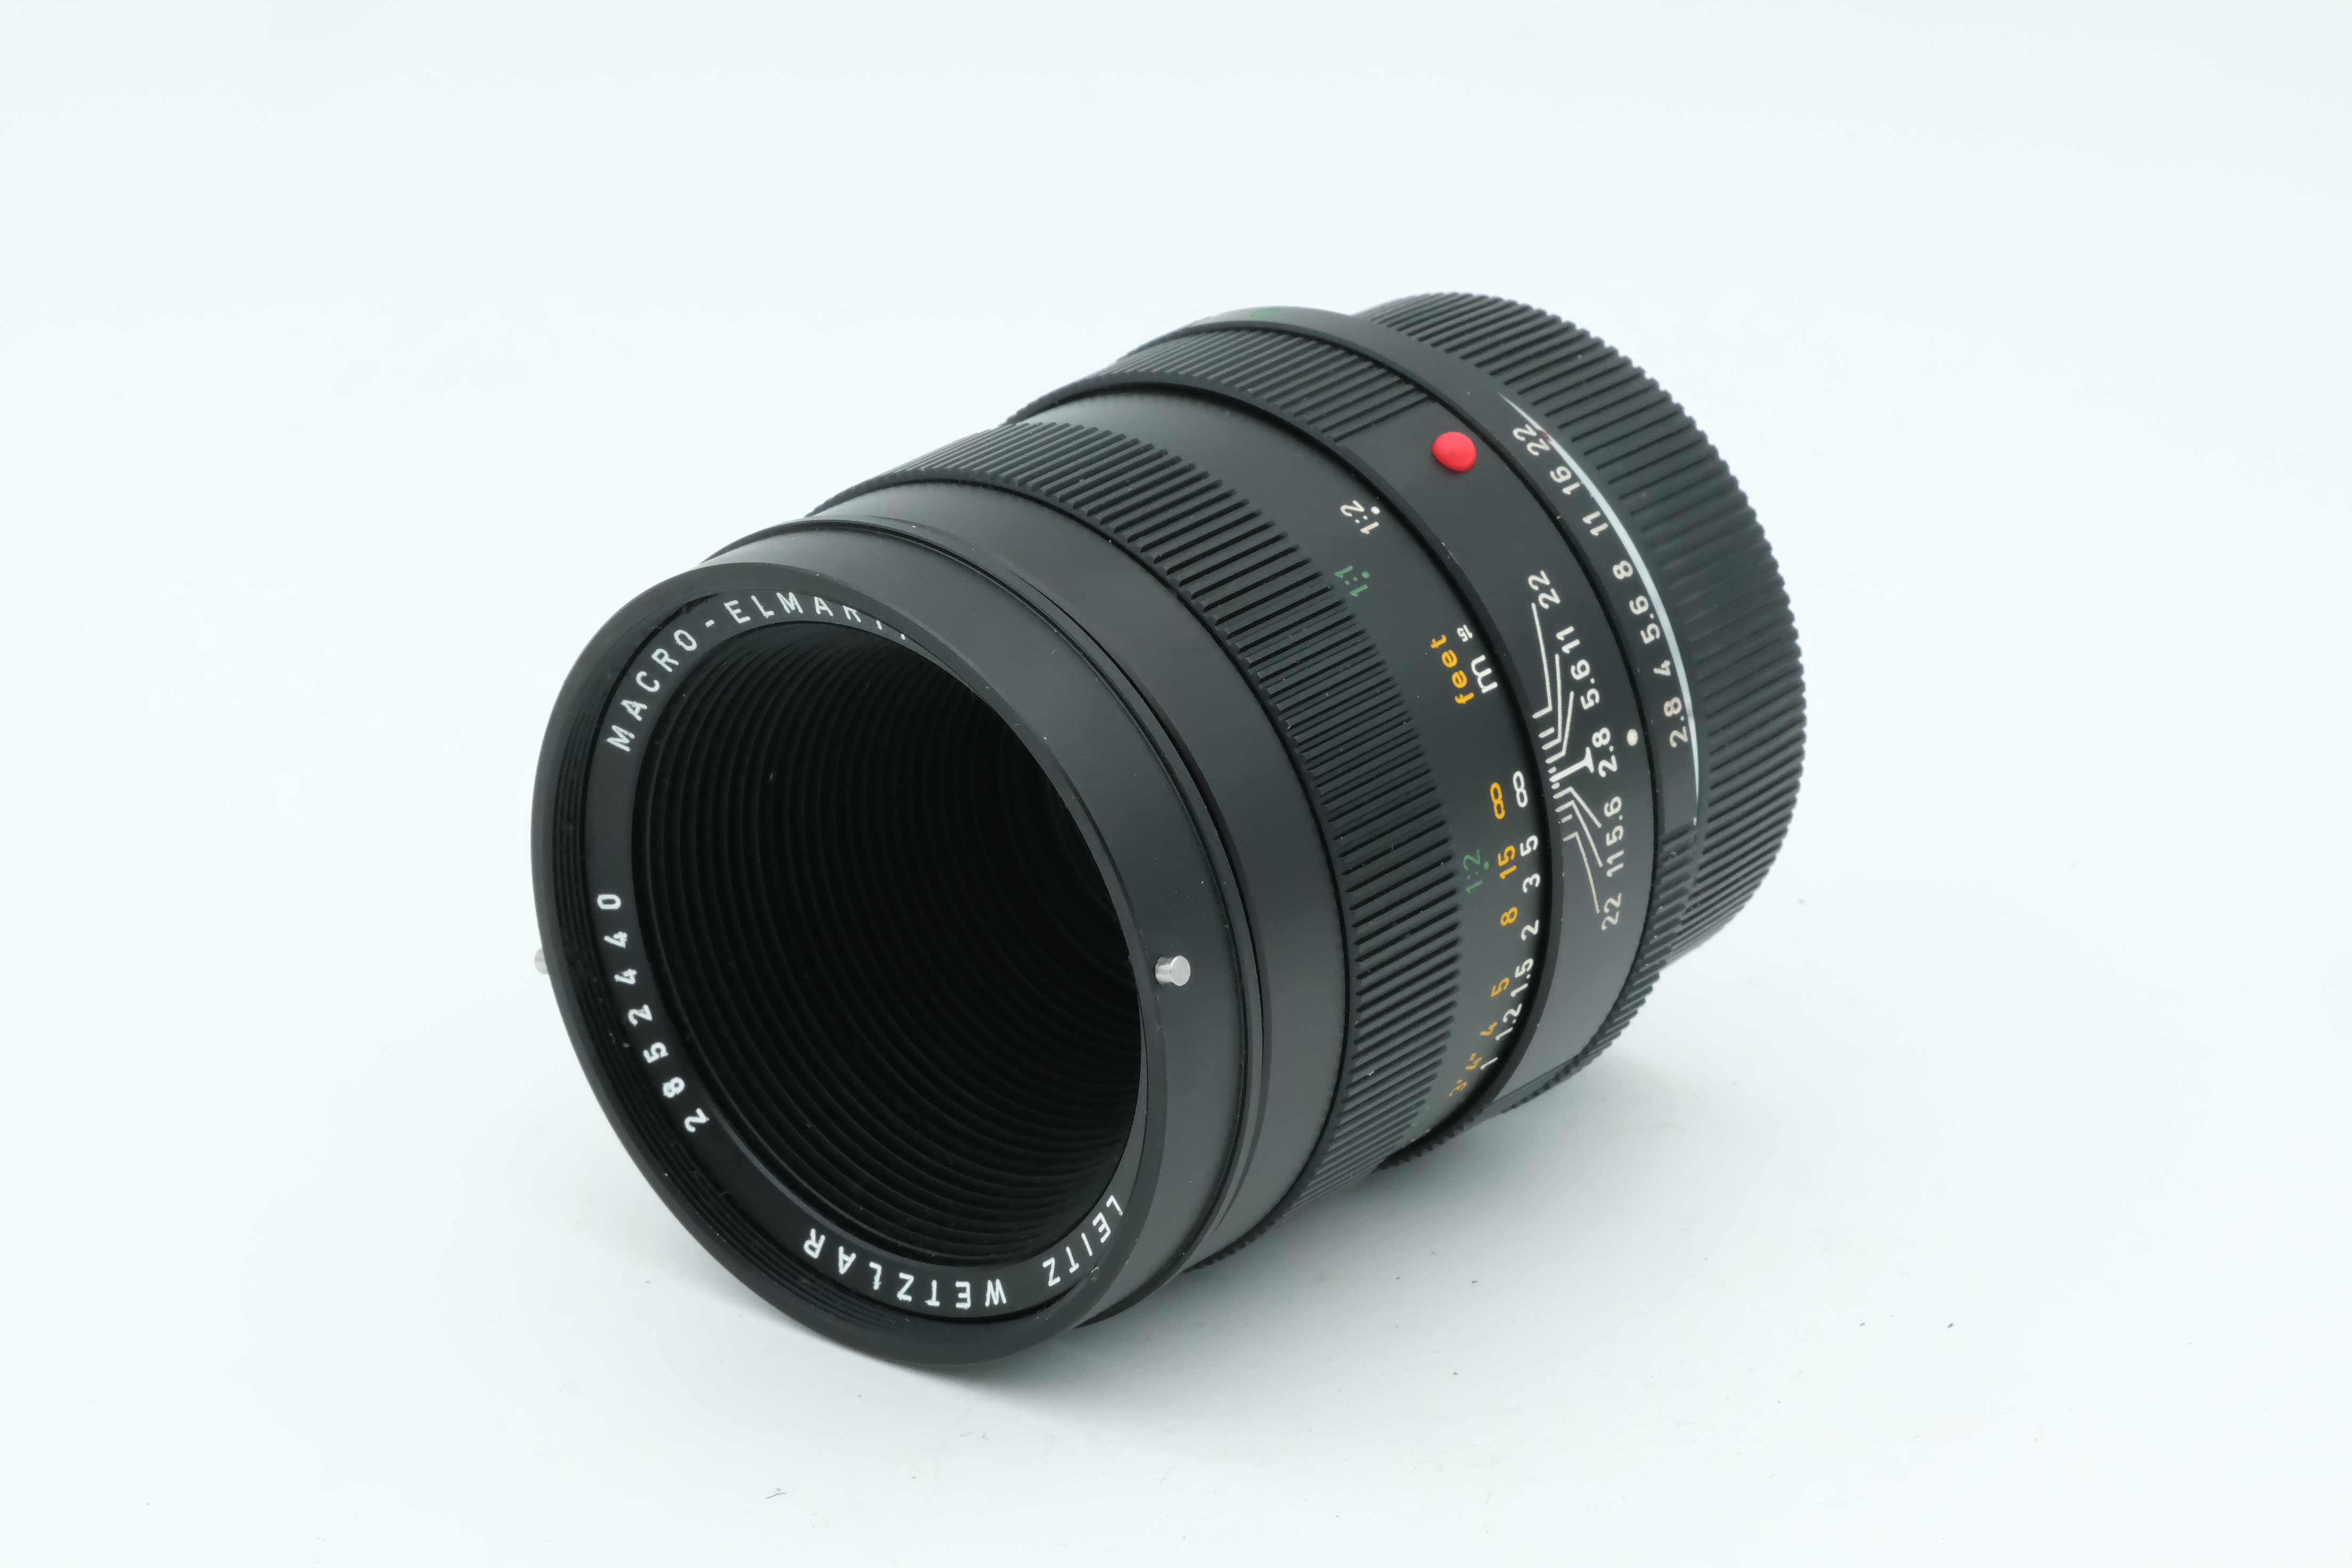 Leica Macro-Elmarit-R 60mm 2,8 Cam3, 6 Monate Garantie Bild 02